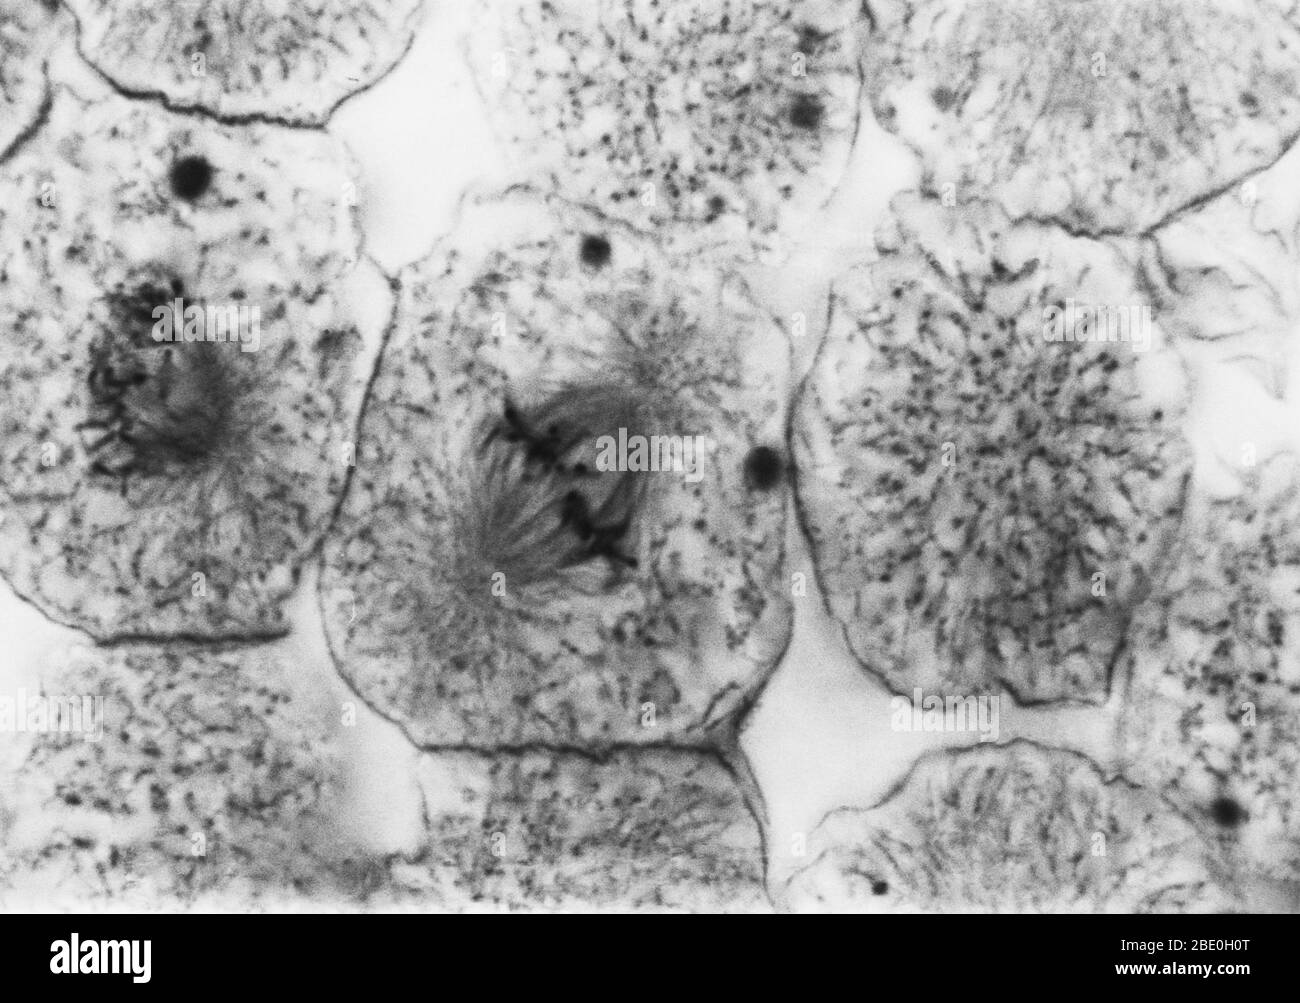 Micrographe léger montrant la mitose dans la blastula de grand corégone, métaphase précoce. Aucun agrandissement donné. Mitose, la méthode habituelle de division cellulaire, caractérisée typiquement par la résolution de la chromatine du noyau en une forme de thrélike, qui se condense en chromosomes, chacun d'eux se sépare longitudinalement en deux parties, une partie de chaque chromosome étant retenue dans chacune des deux nouvelles cellules résultant de la cellule d'origine. Les quatre principales phases de la mitose sont la prophase, la métaphase, l'anaphase et la télophase. Blastula, embryon animal à l'étape immédiatement après la division du groupe de travail Banque D'Images